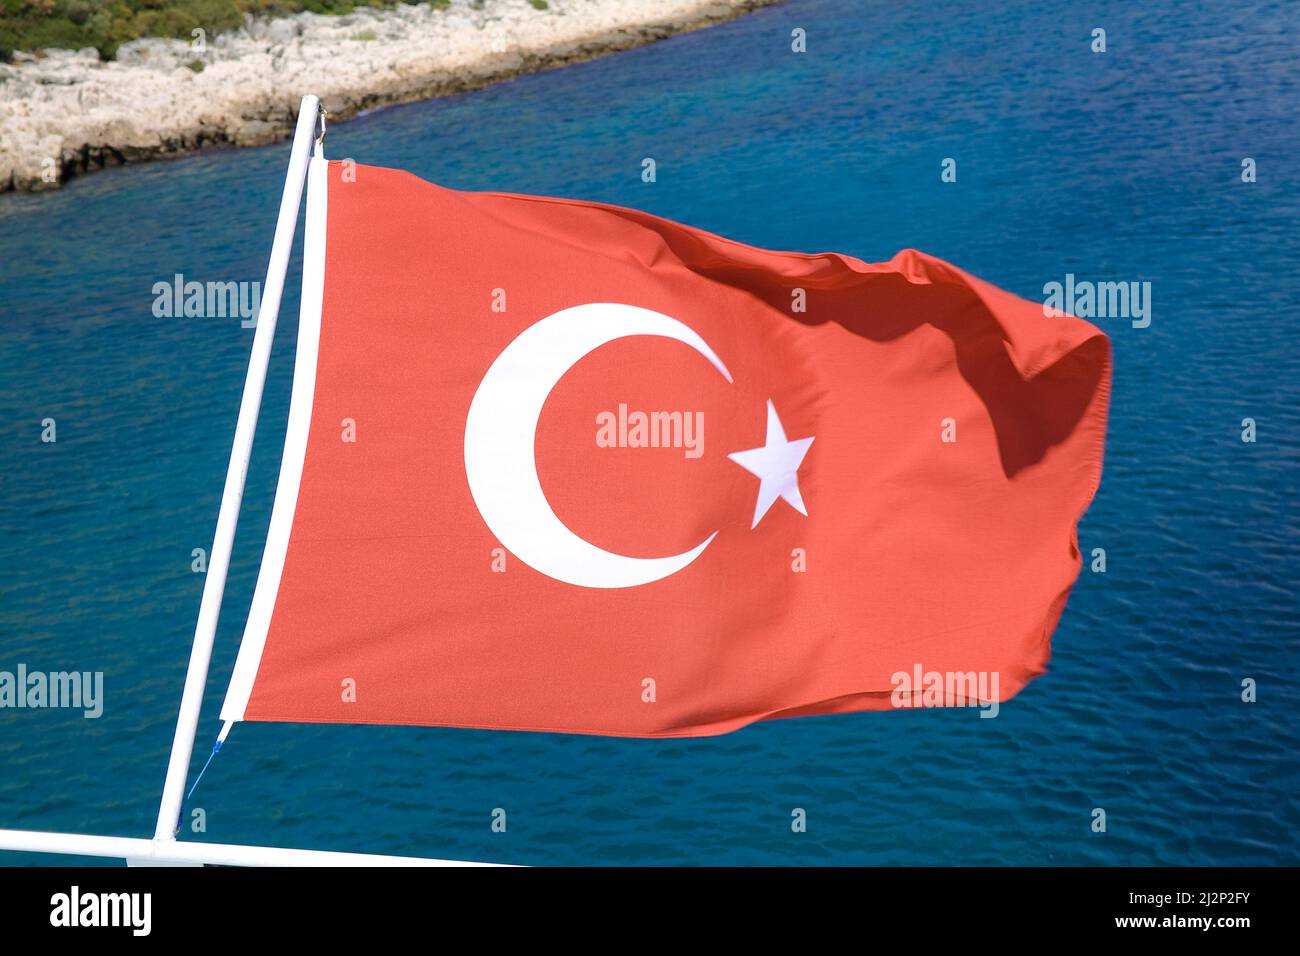 Bandera nacional de Turquía, Kas, Lycia, Turquía, Mar Mediterráneo Foto de stock